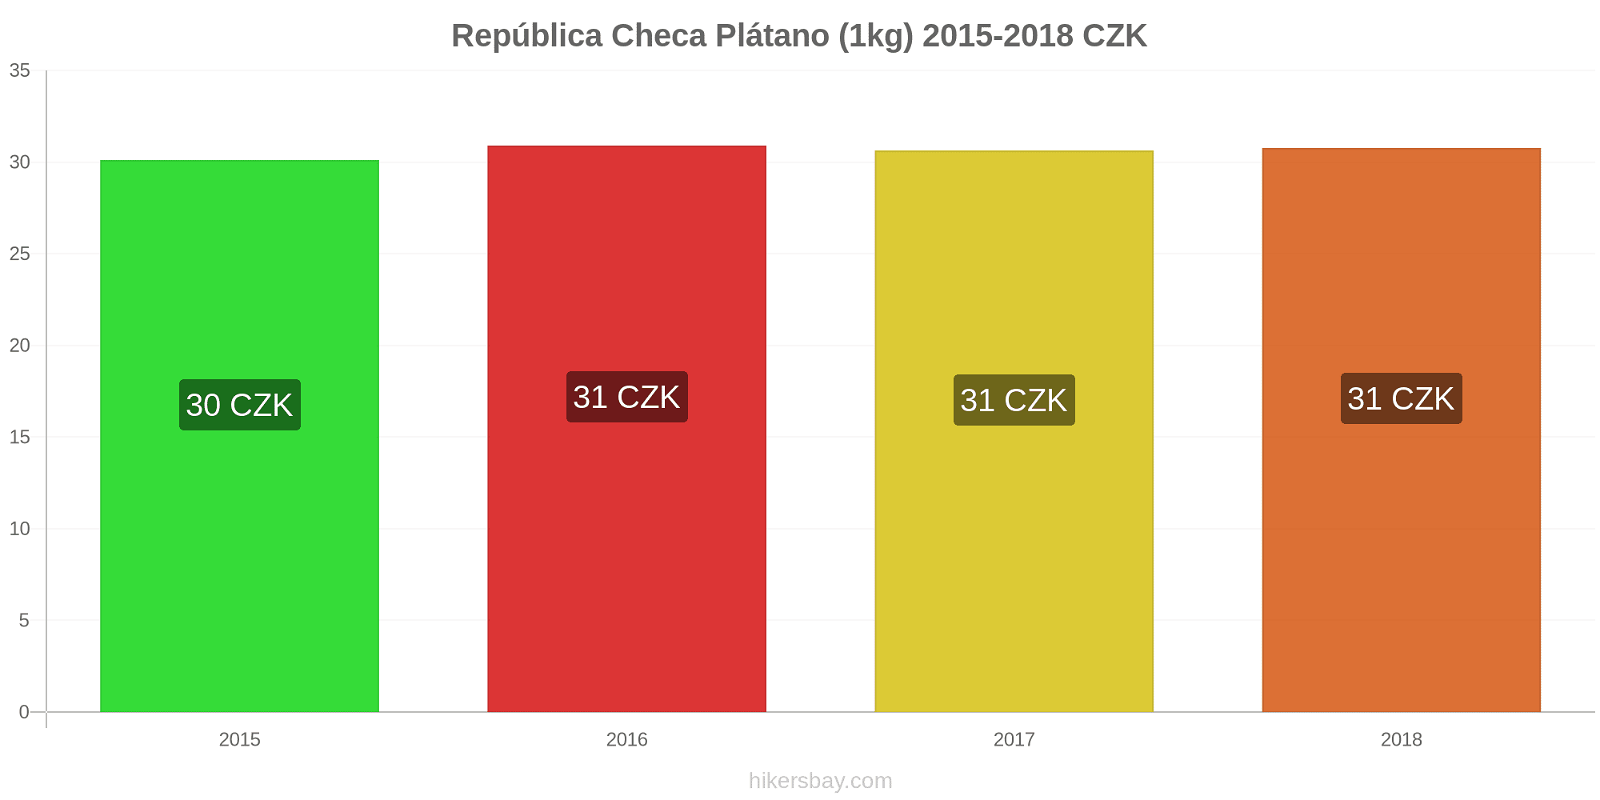 República Checa cambios de precios Plátanos (1kg) hikersbay.com